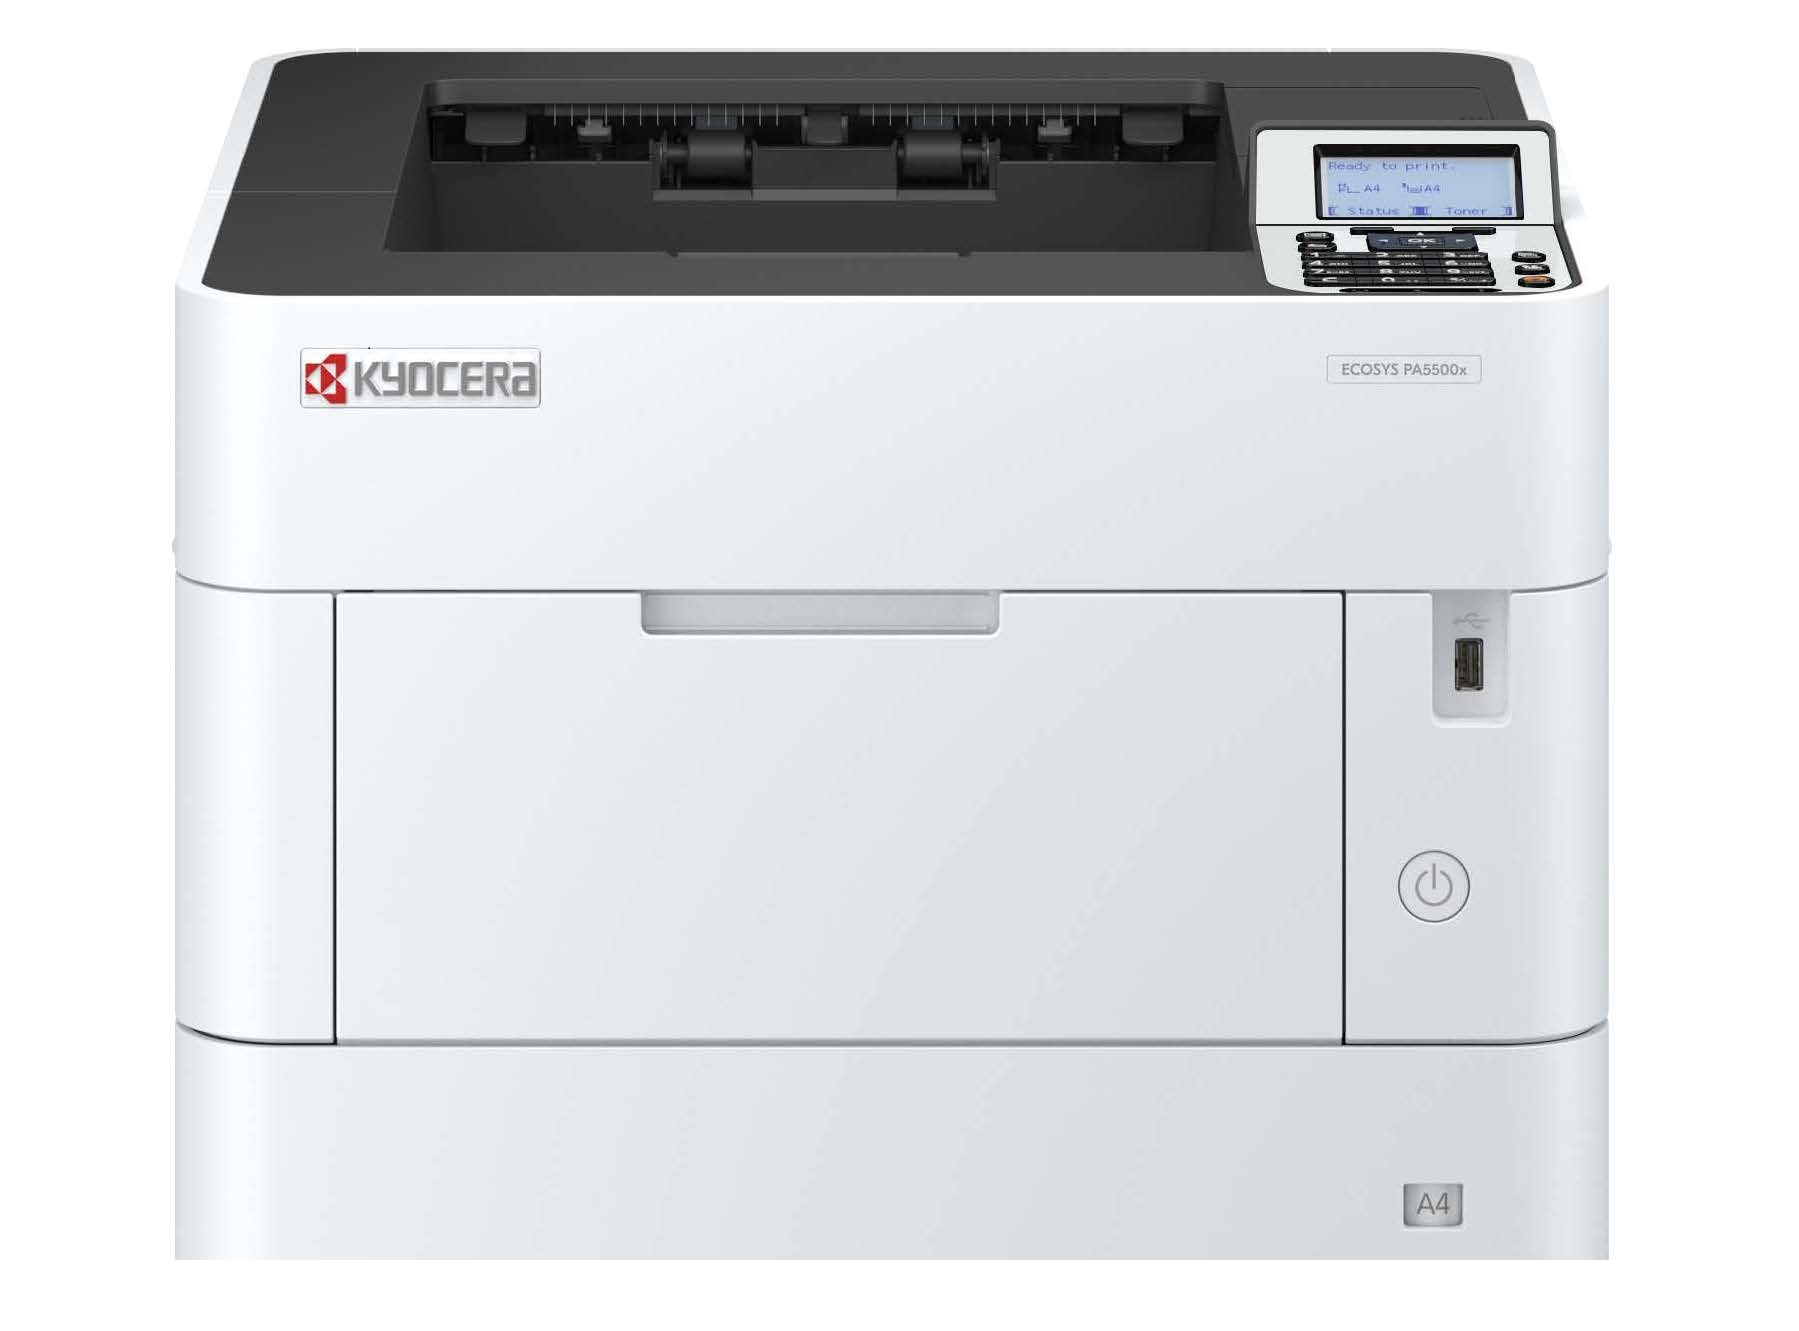 Принтер Kyocera ECOSYS PA5500x, купить в Москве, цены в интернет-магазинах на Мегамаркет